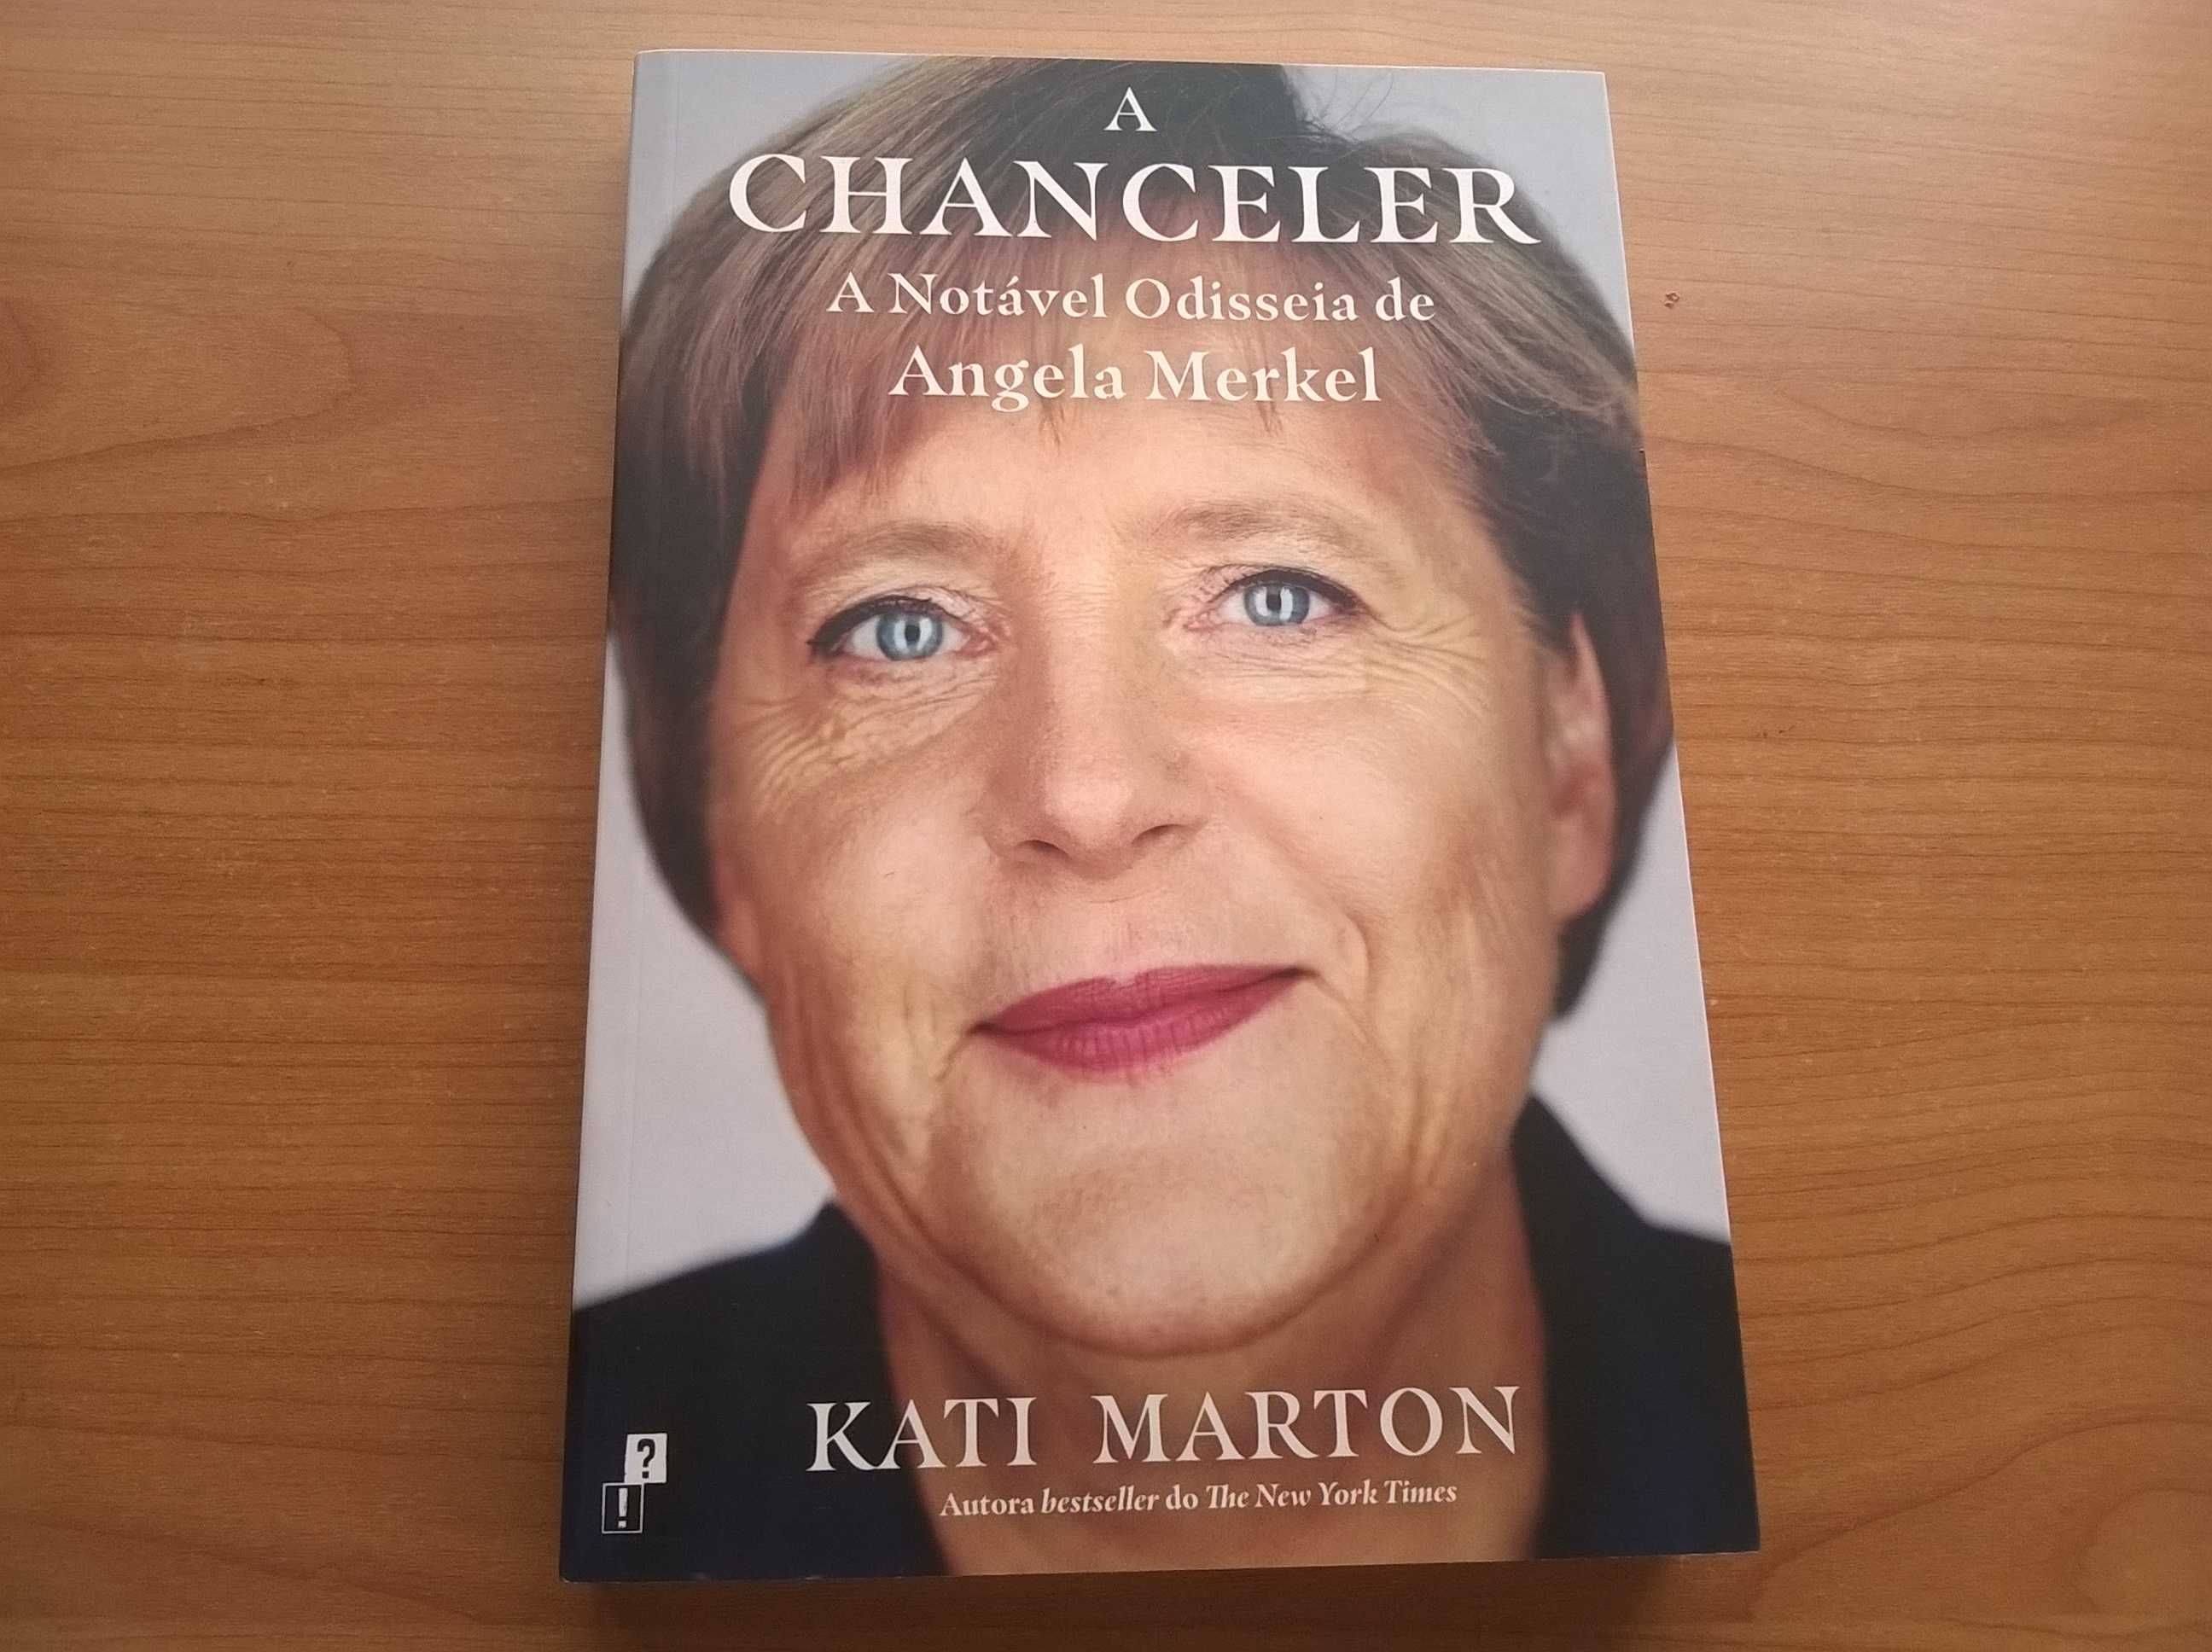 A Chanceler -A Notável Odisseia de Ângela Merkel - Kati Marton